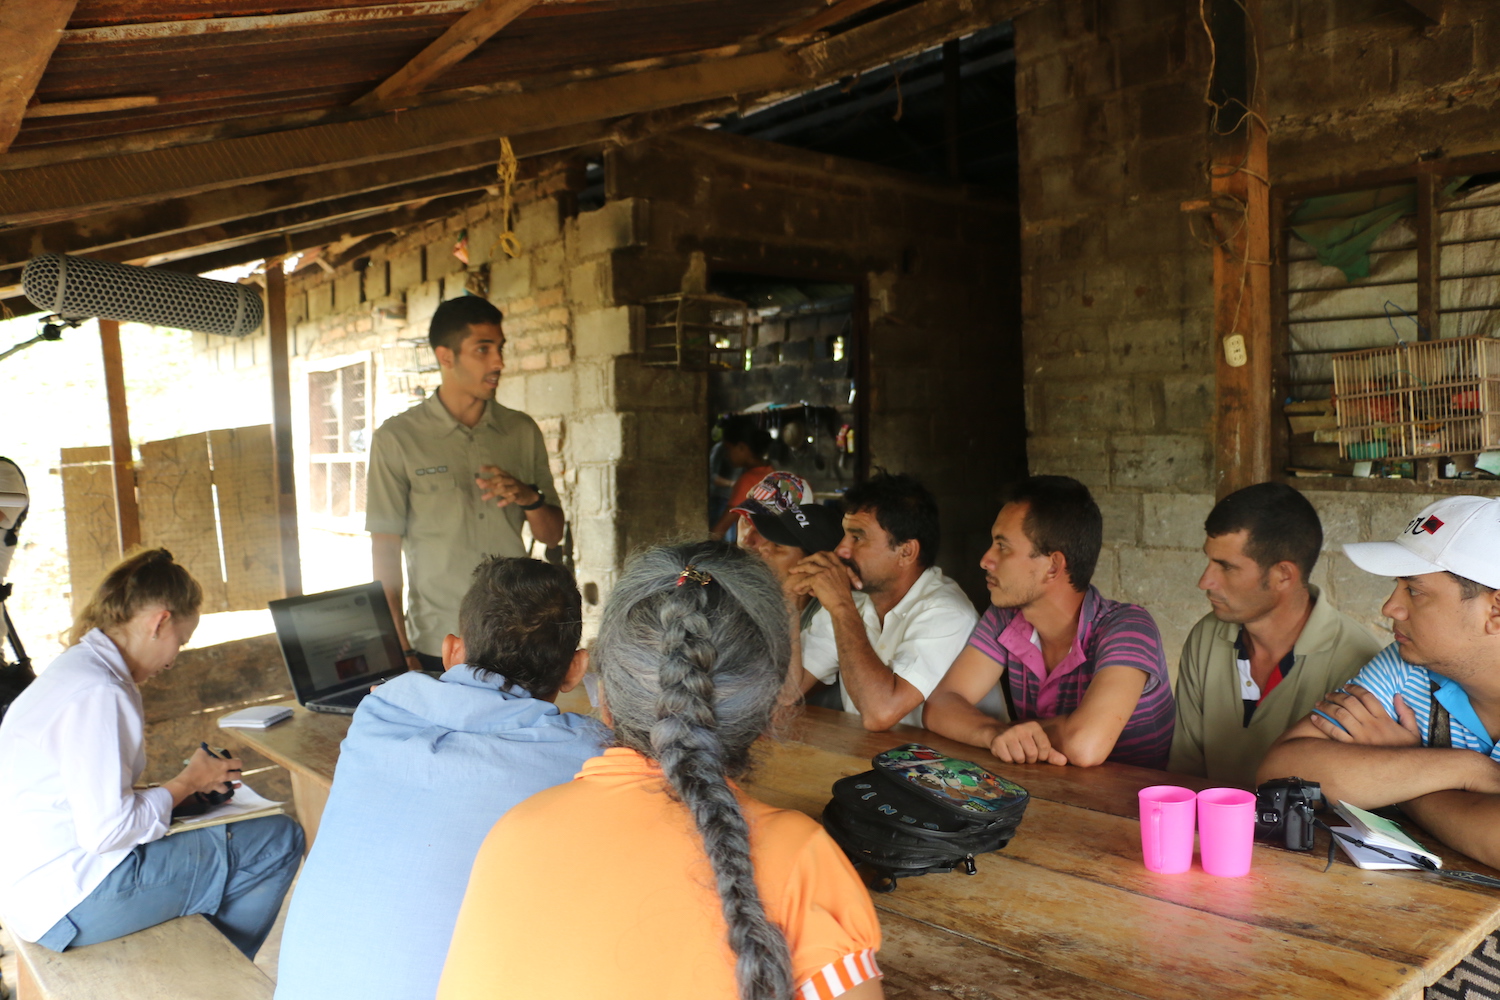 Reuniones de la organización ProCAT con campesinos de la Sierra Nevada de Santa Marta. Foto: ProCAT Colombia.